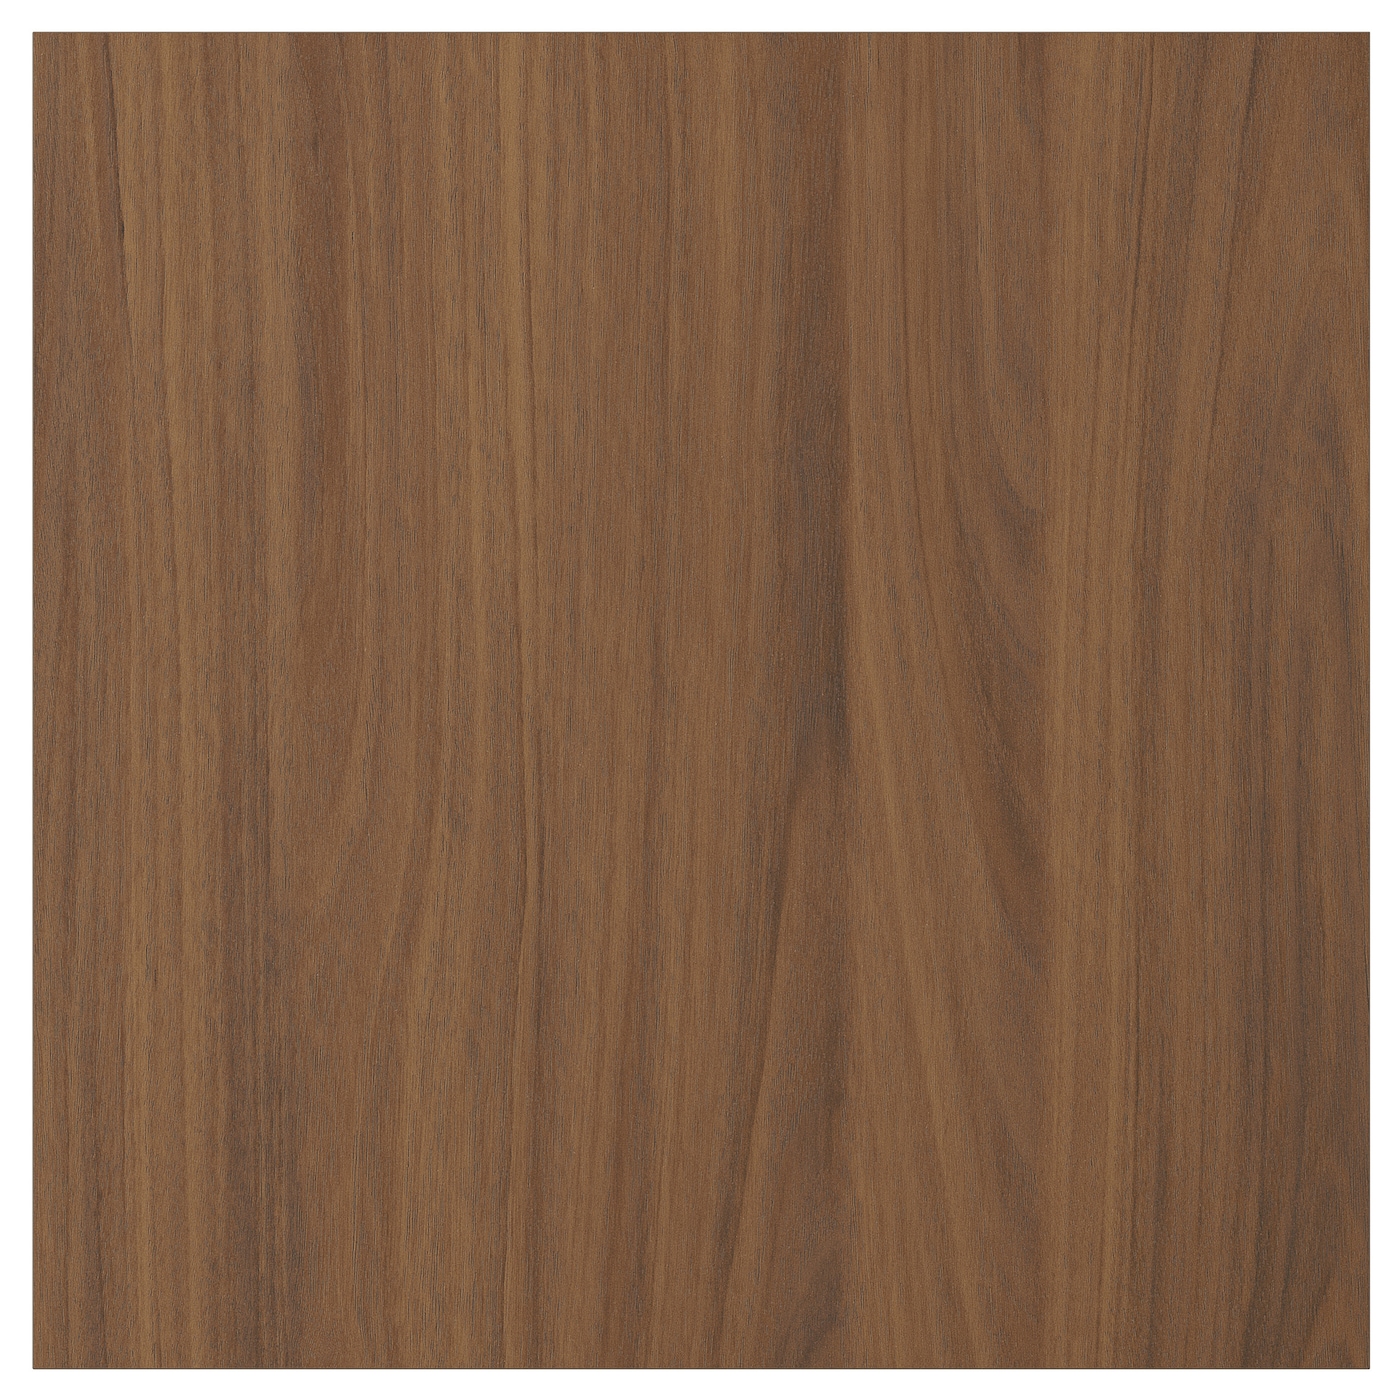 Дверца  - TISTORP IKEA/ ТИСТОРП ИКЕА,  40х40 см, коричневый